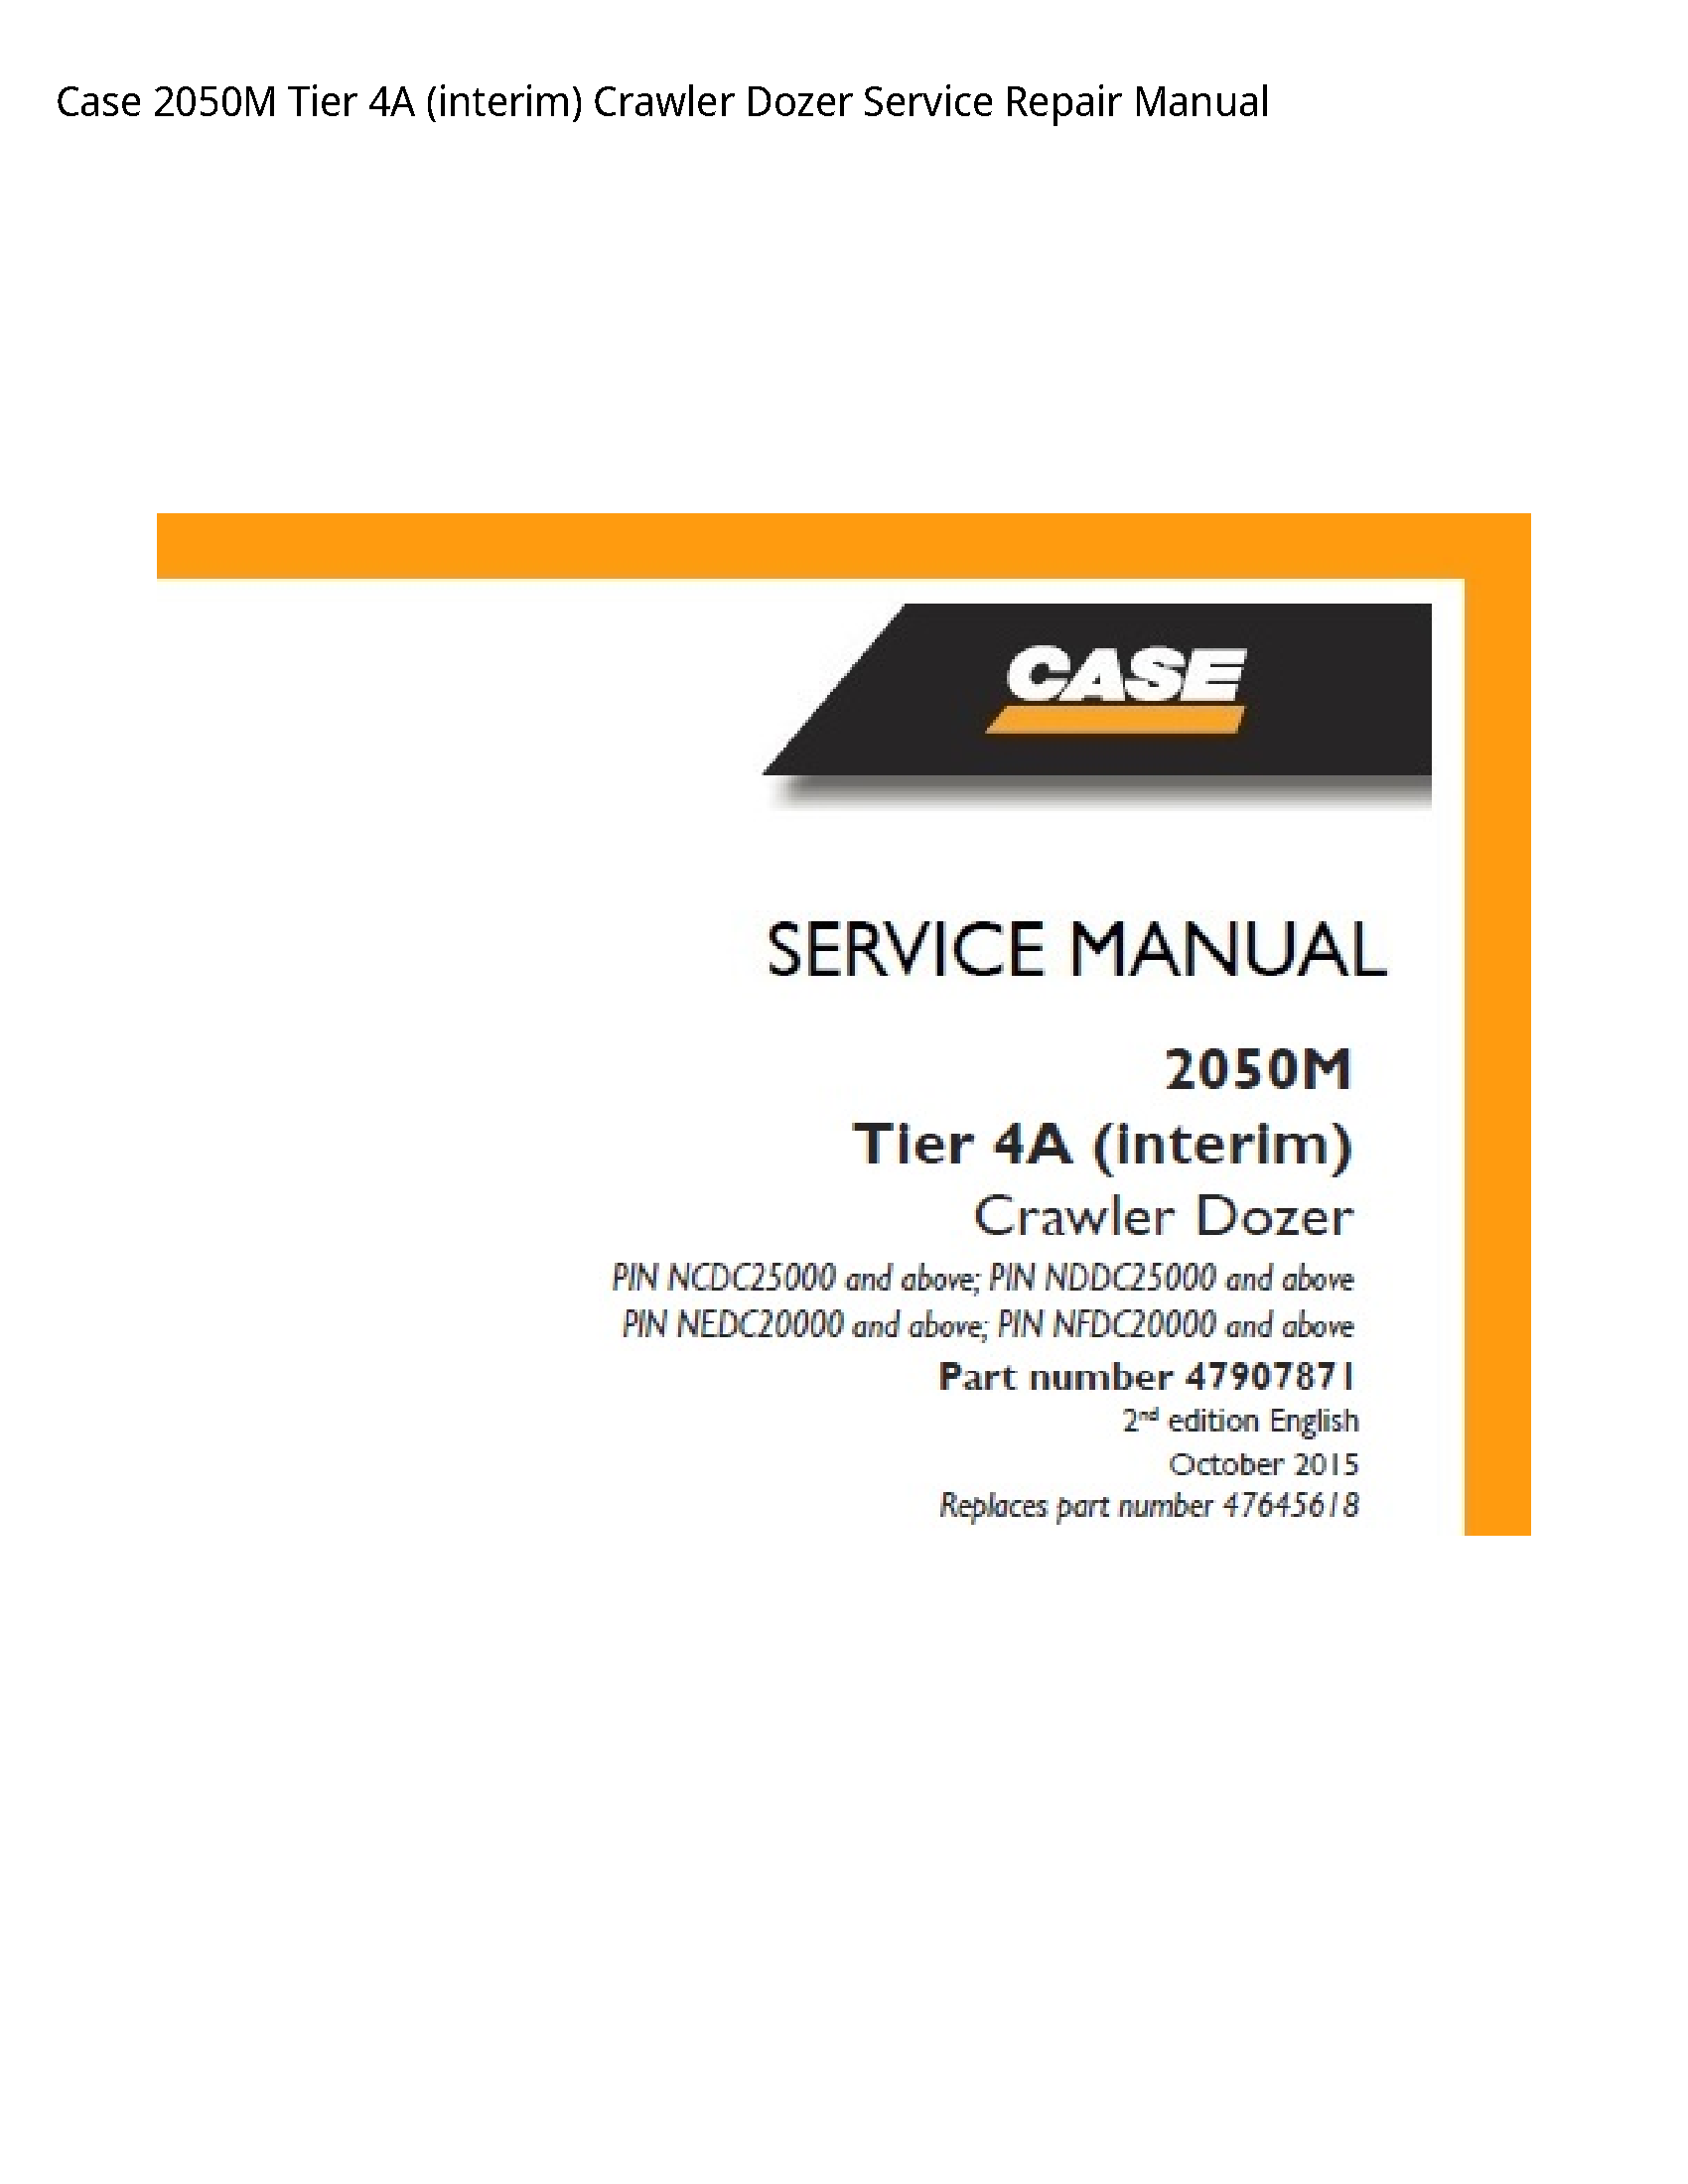 Case/Case IH 2050M Tier (interim) Crawler Dozer manual